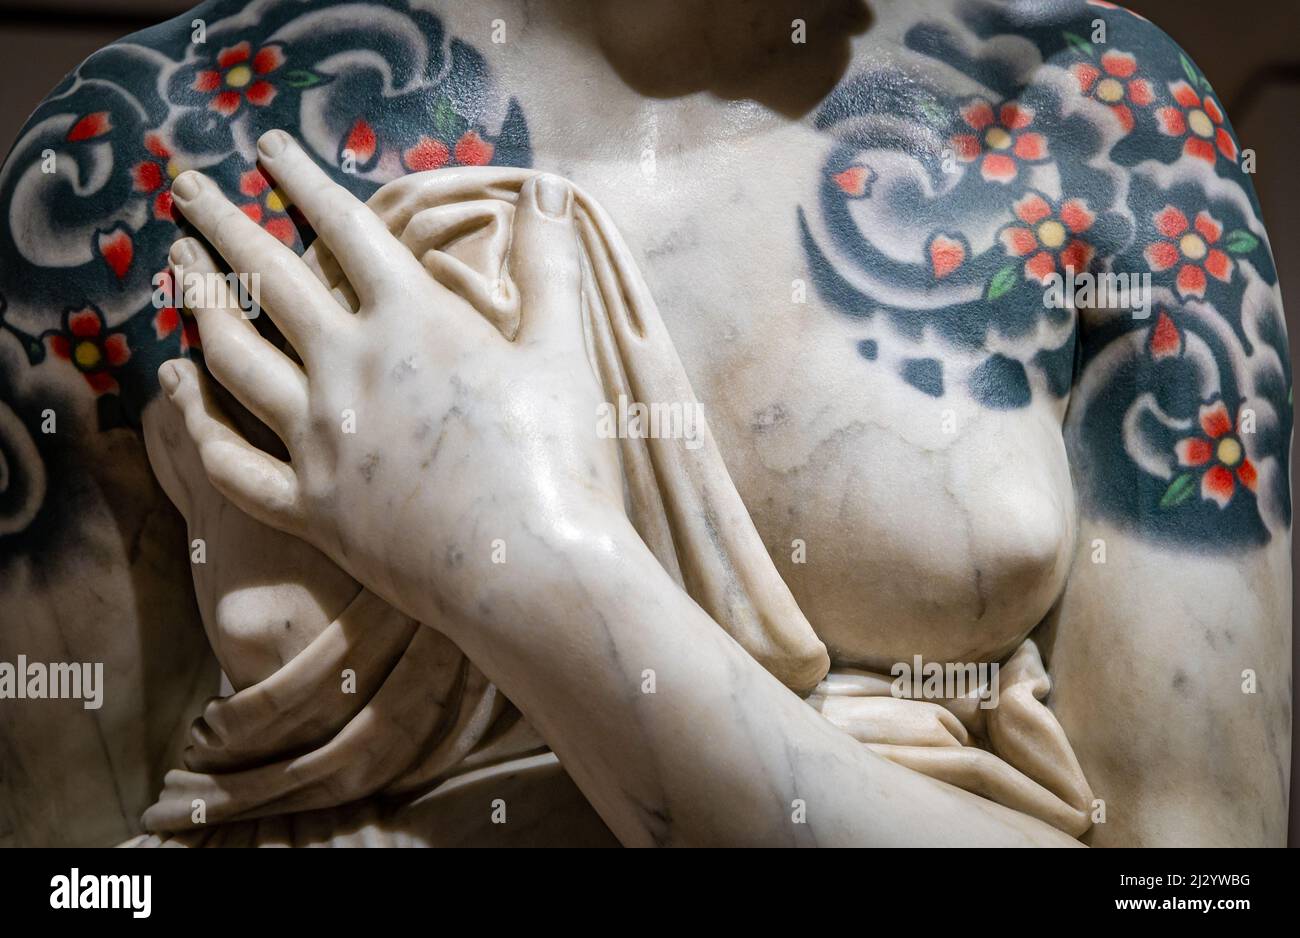 Dettagli delle sculture marmoree (venus italica) di Viale Fabio esposte al Museo d'Arte Contemporanea di Trento e Rovereto Mart.Italy Foto Stock